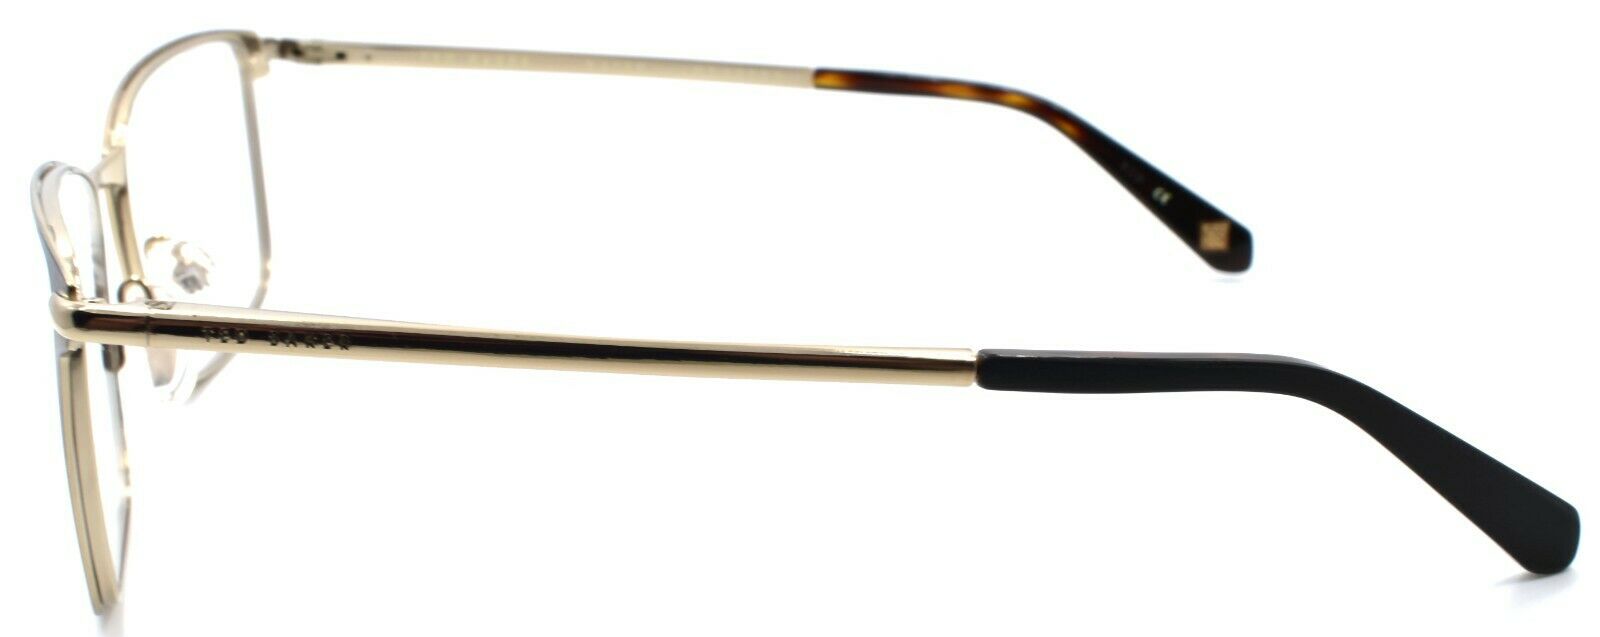 3-Ted Baker Drummond 4244 104 Men's Eyeglasses Frames 54-18-140 Brown / Gold-4894327119097-IKSpecs